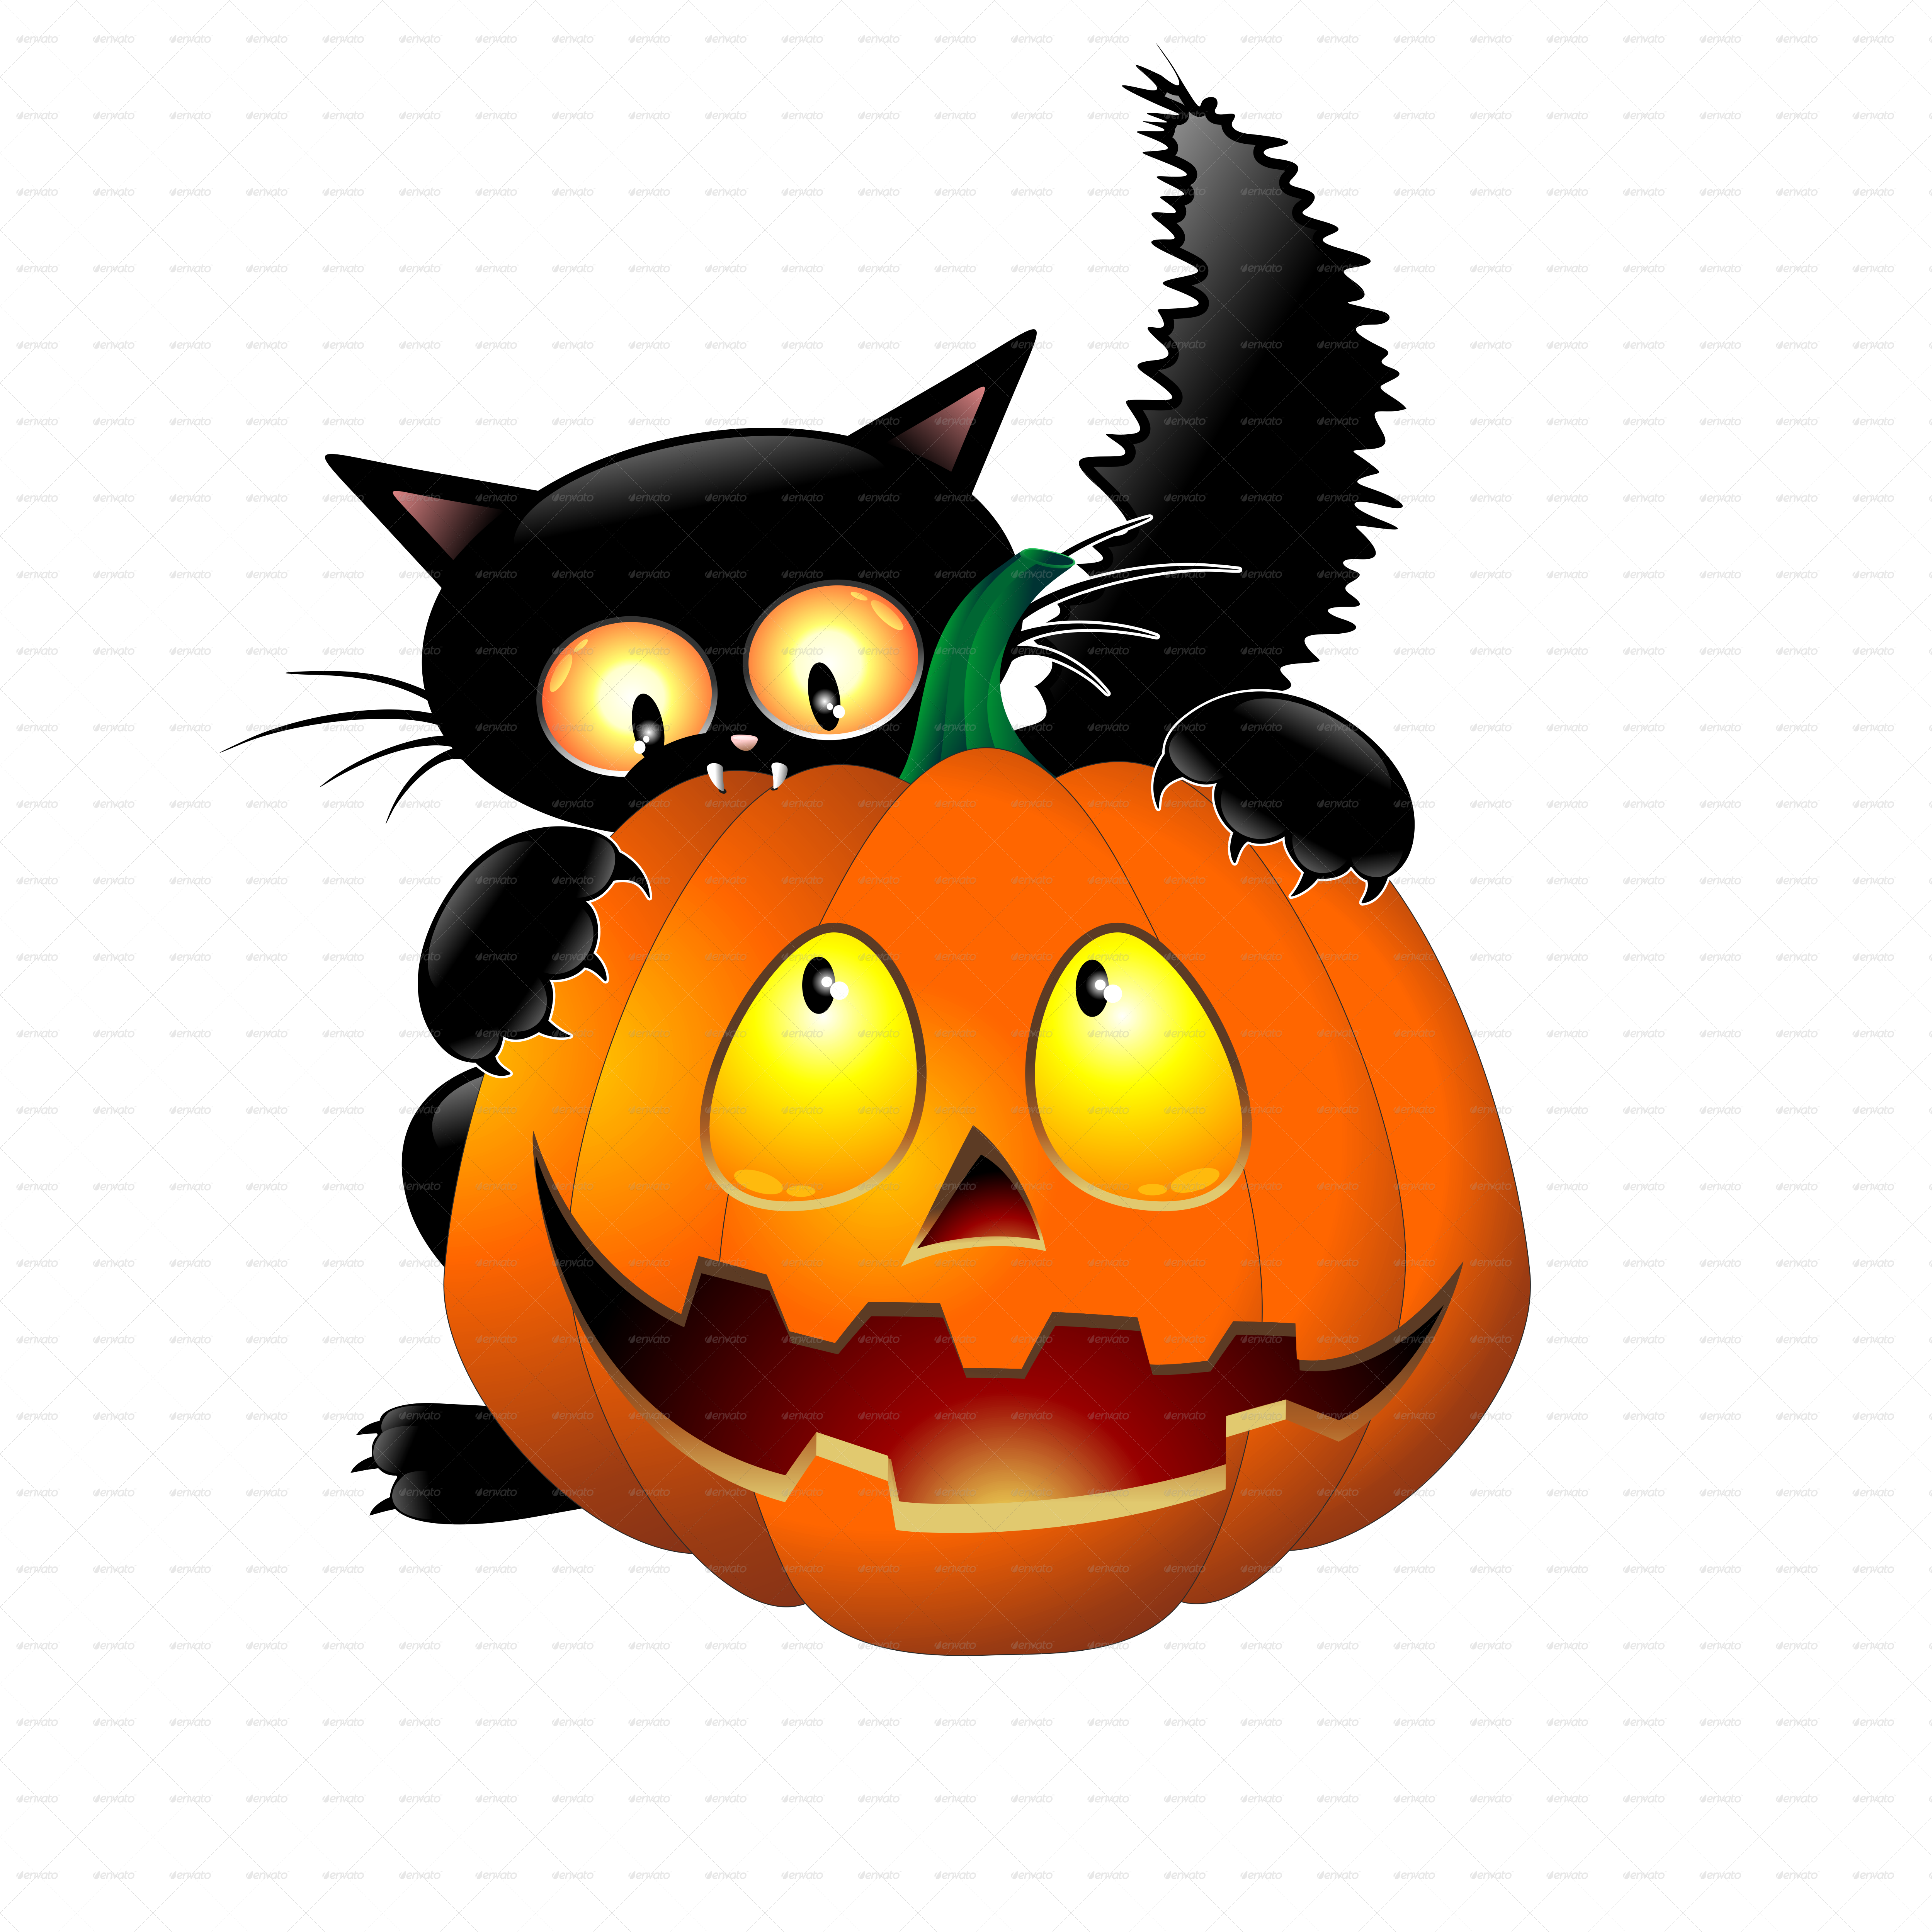 Halloween Cartoon Pictures Empowermephoto - Halloween Black Cat With Pumpkin Bottle Cap Earrings (5000x5000)